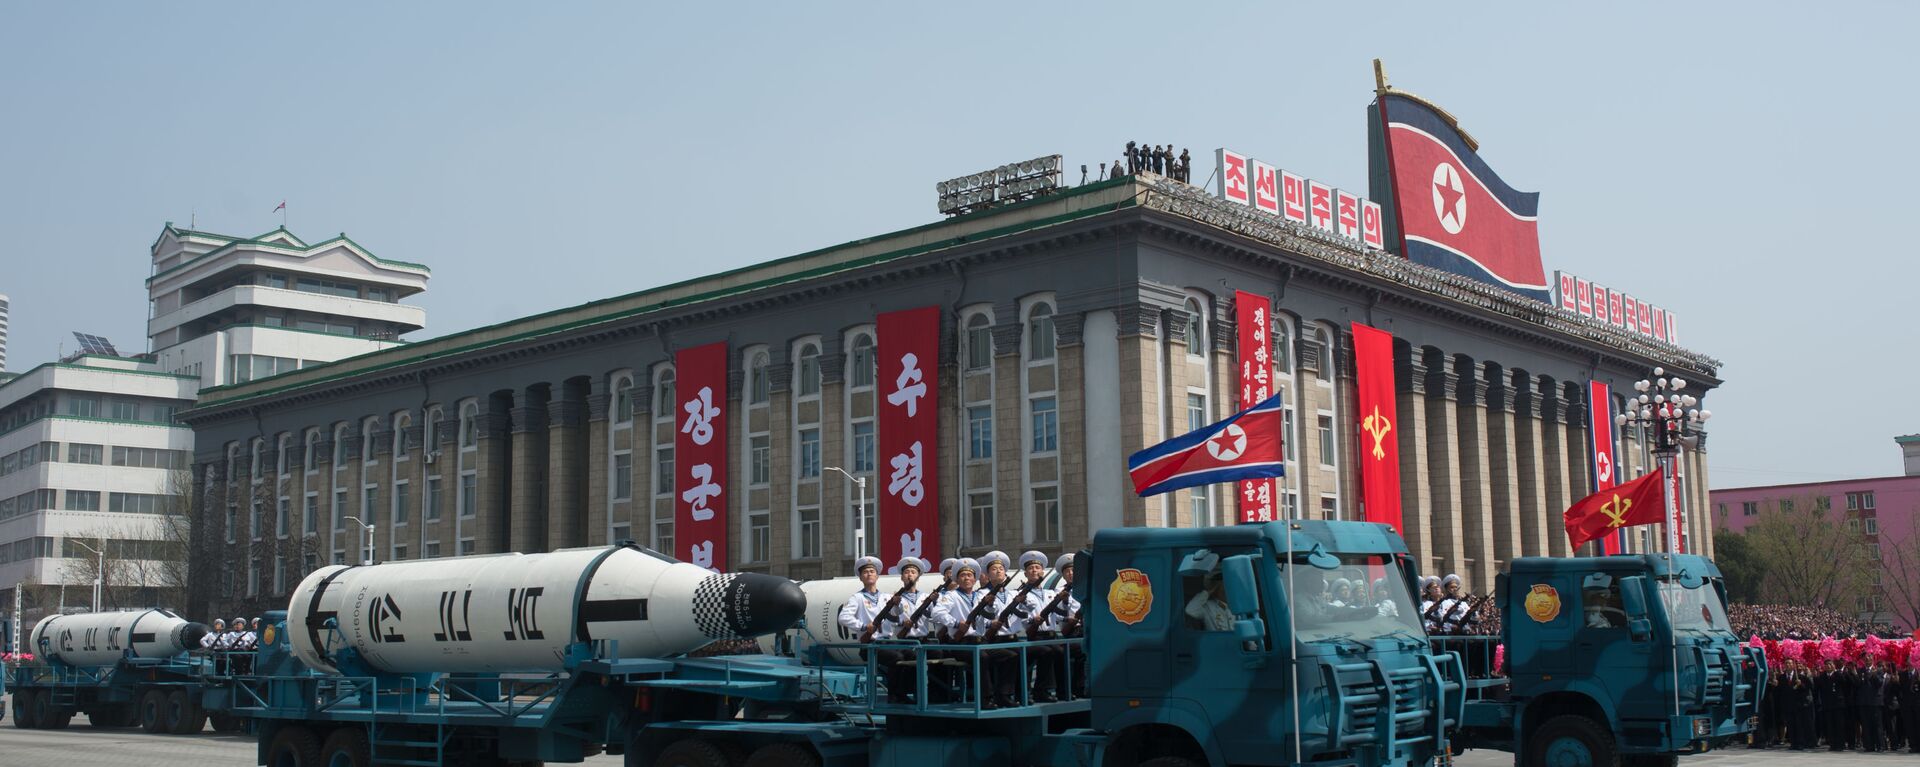 Балистичке ракете за подморнице Пукистон-1 на паради у Пјонгјангу, Северна Кореја. - Sputnik Србија, 1920, 22.09.2022